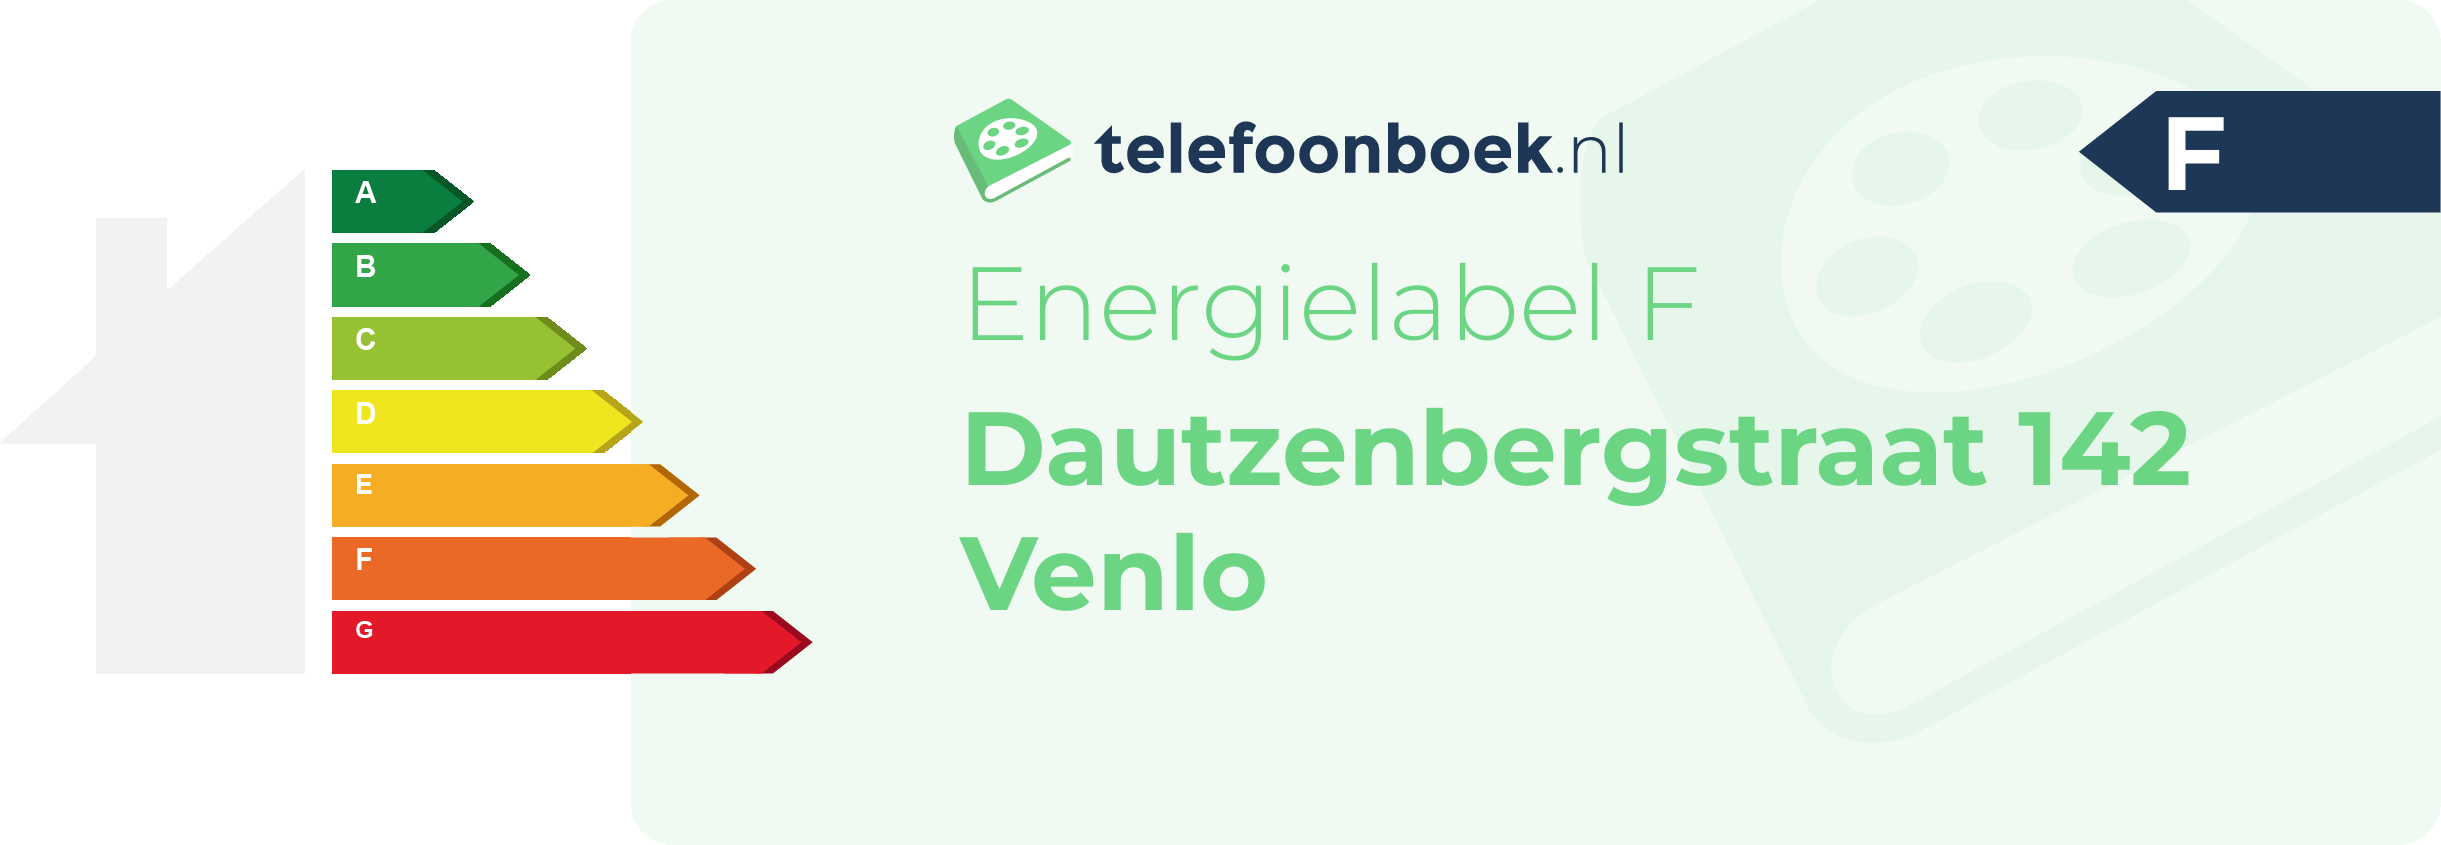 Energielabel Dautzenbergstraat 142 Venlo